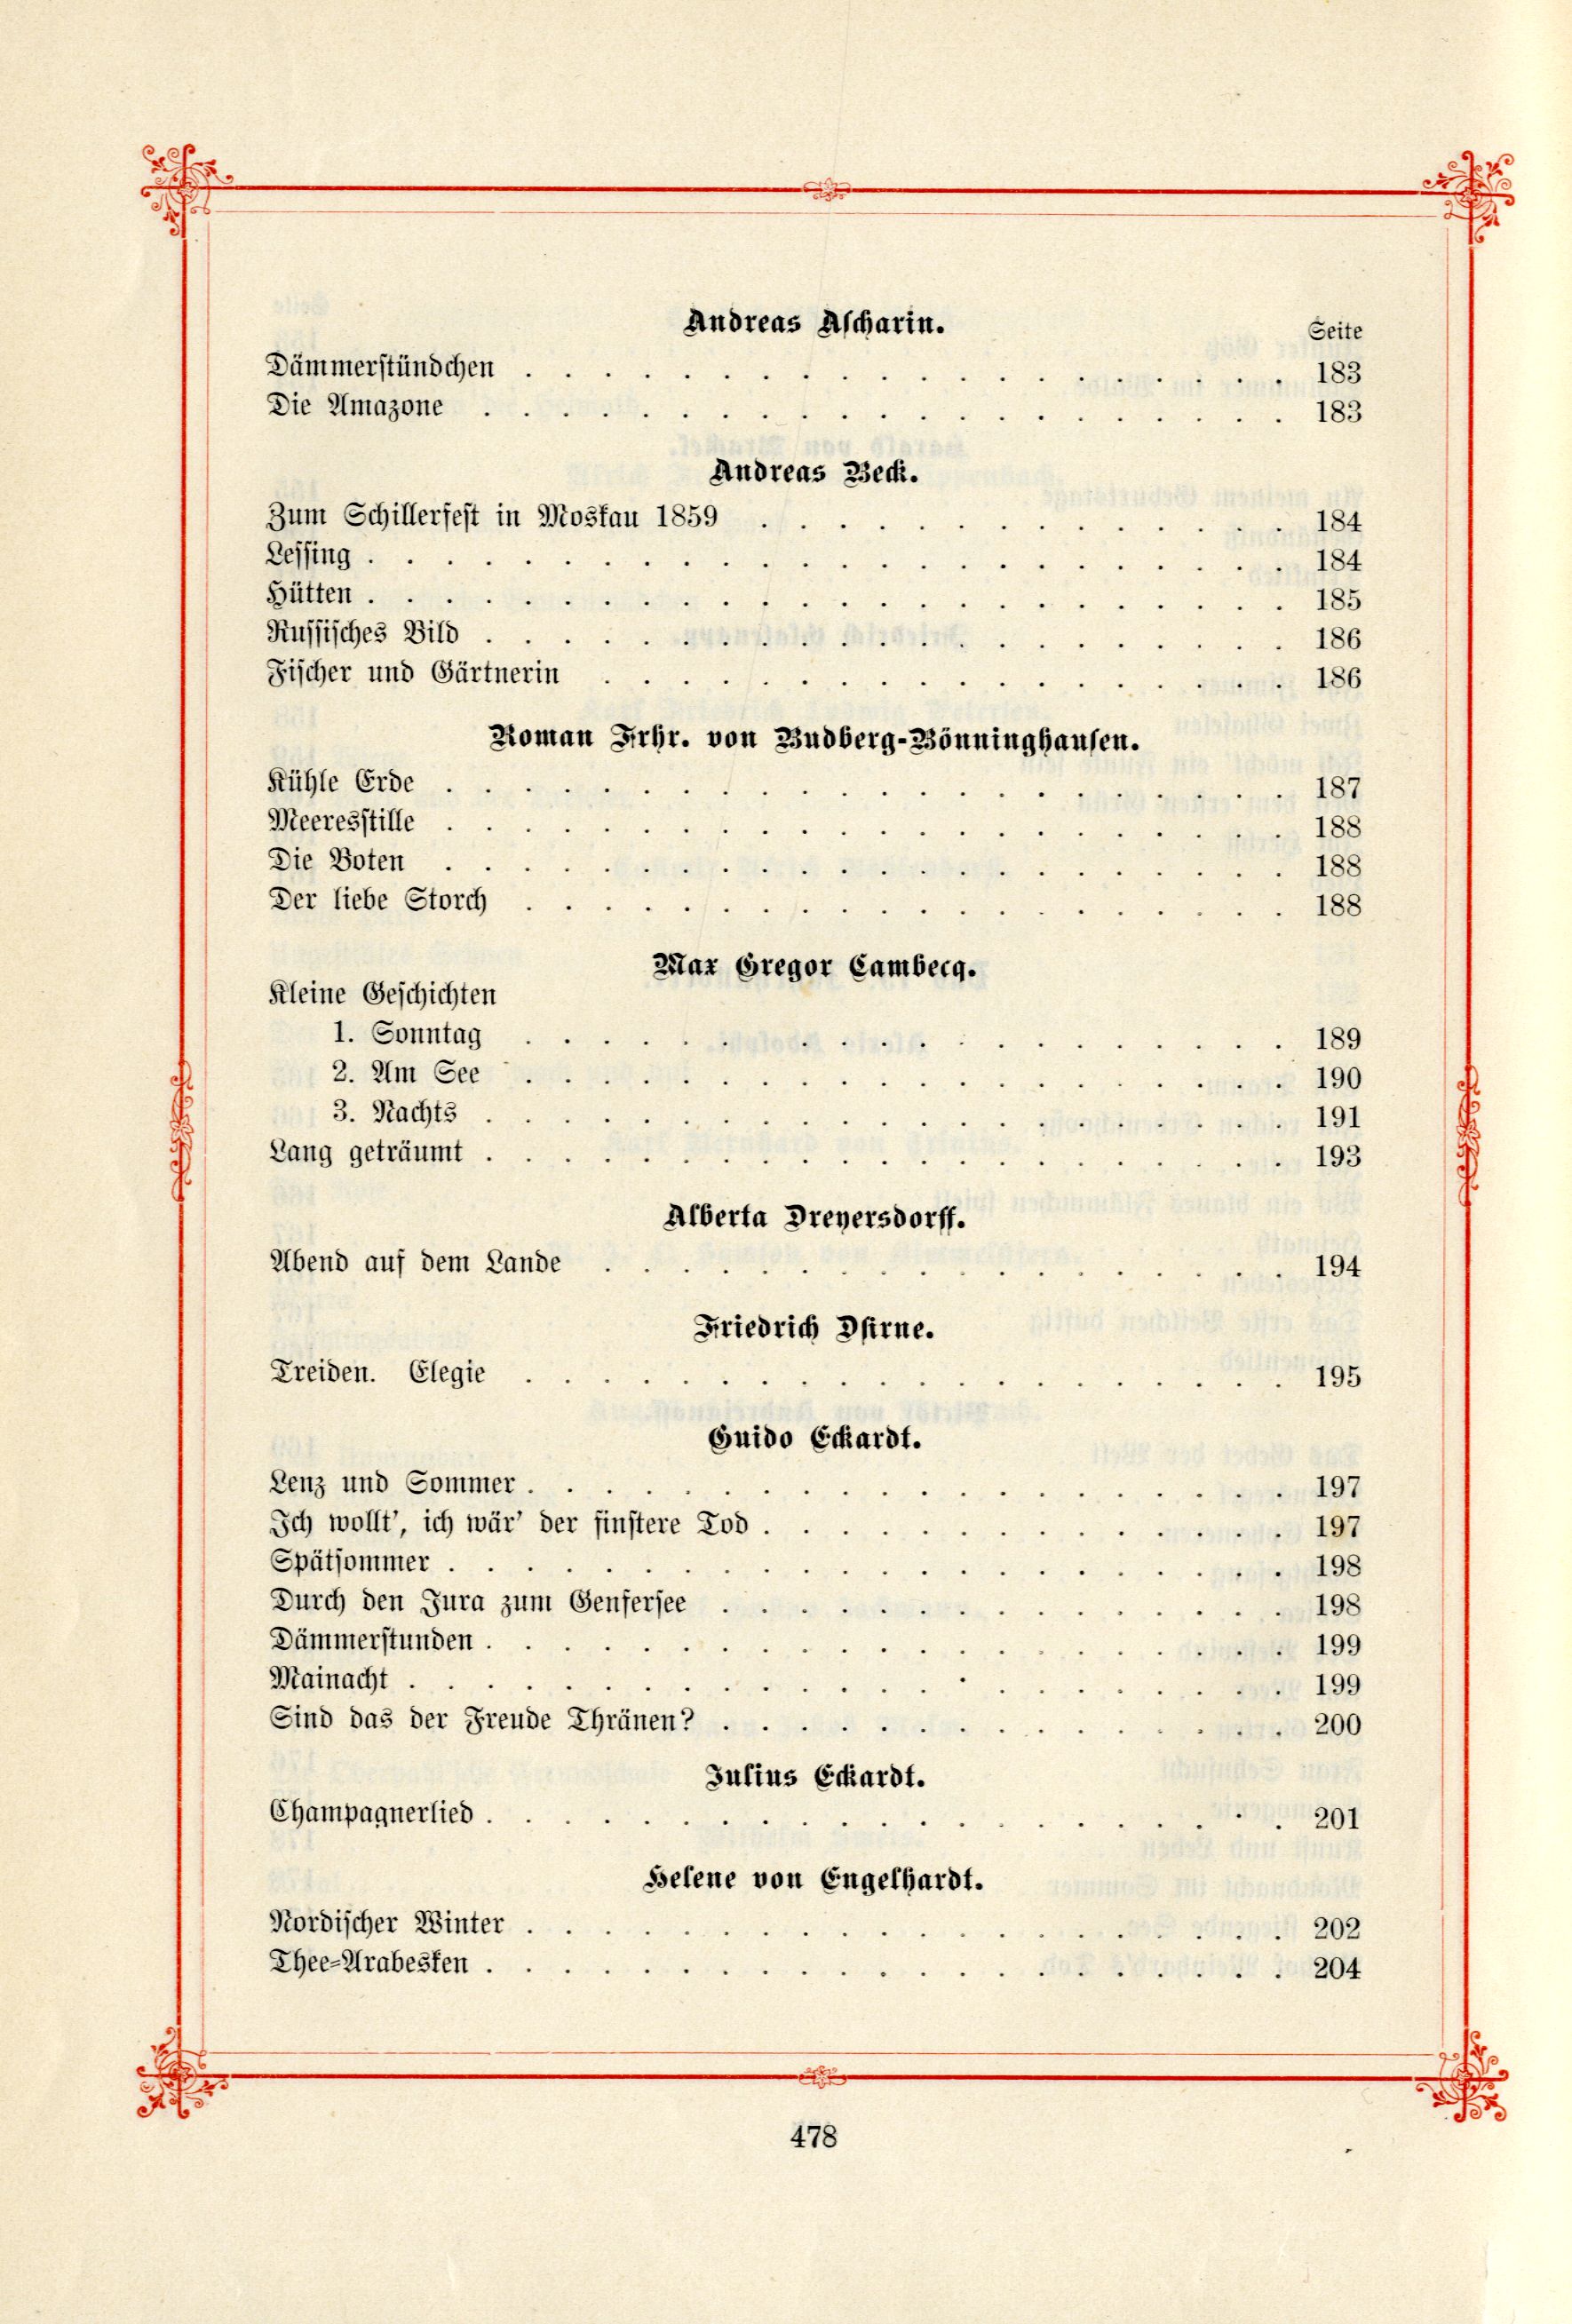 Das Baltische Dichterbuch (1895) | 524. (478) Table of contents